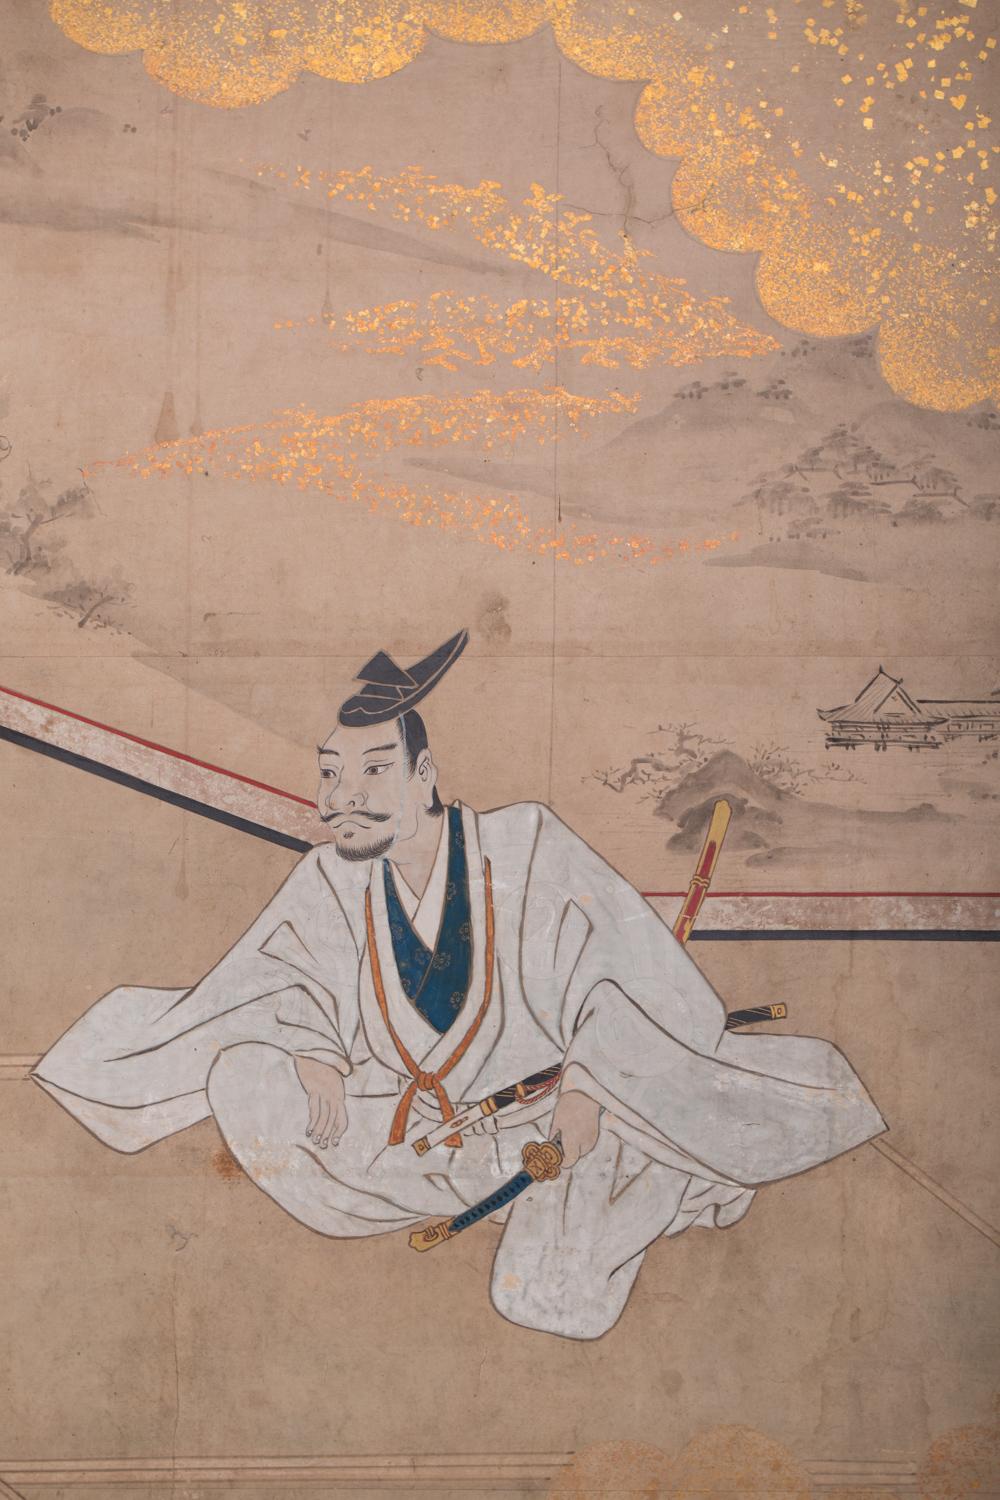 La guerre de Genpei a eu lieu de 1180 à 1185, au cours de laquelle le clan Minamoto s'est rebellé contre le clan Taira pour le contrôle du Japon. Les deux clans ont entretenu une rivalité acharnée pendant des années, et le clan Minamoto a tenté de